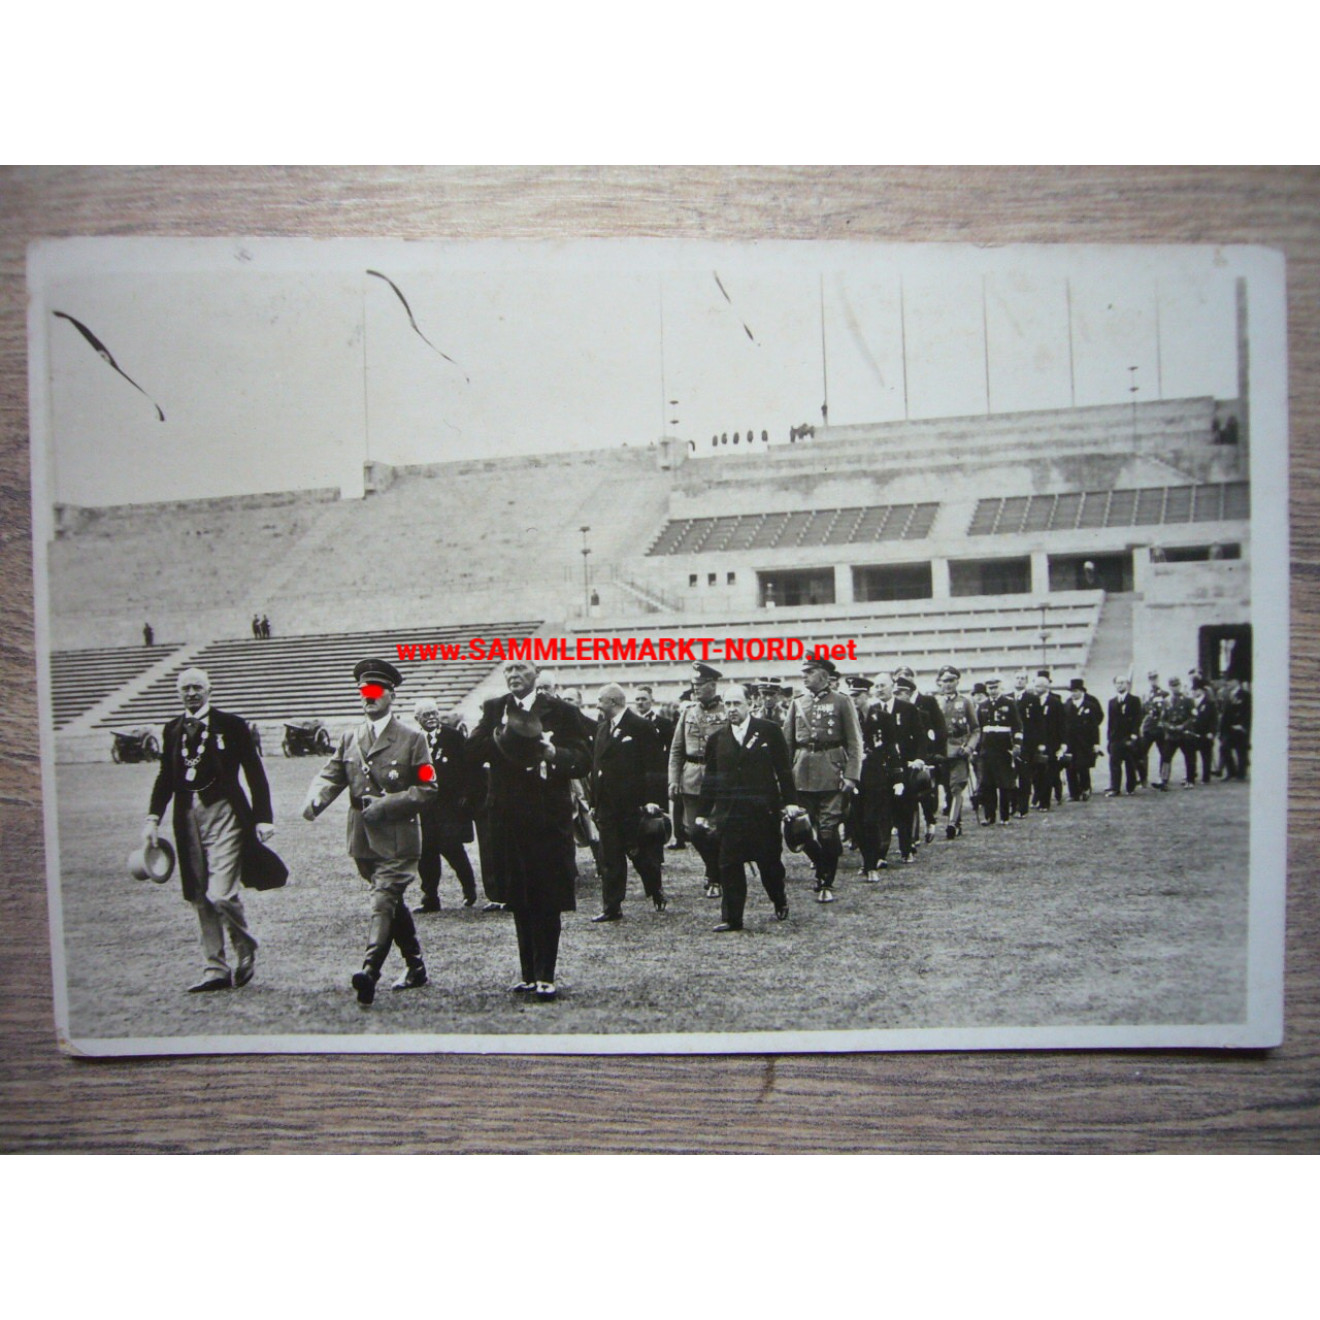 Olympische Spiele Berlin 1936 - Adolf Hitler bei der Eröffnungsfeier